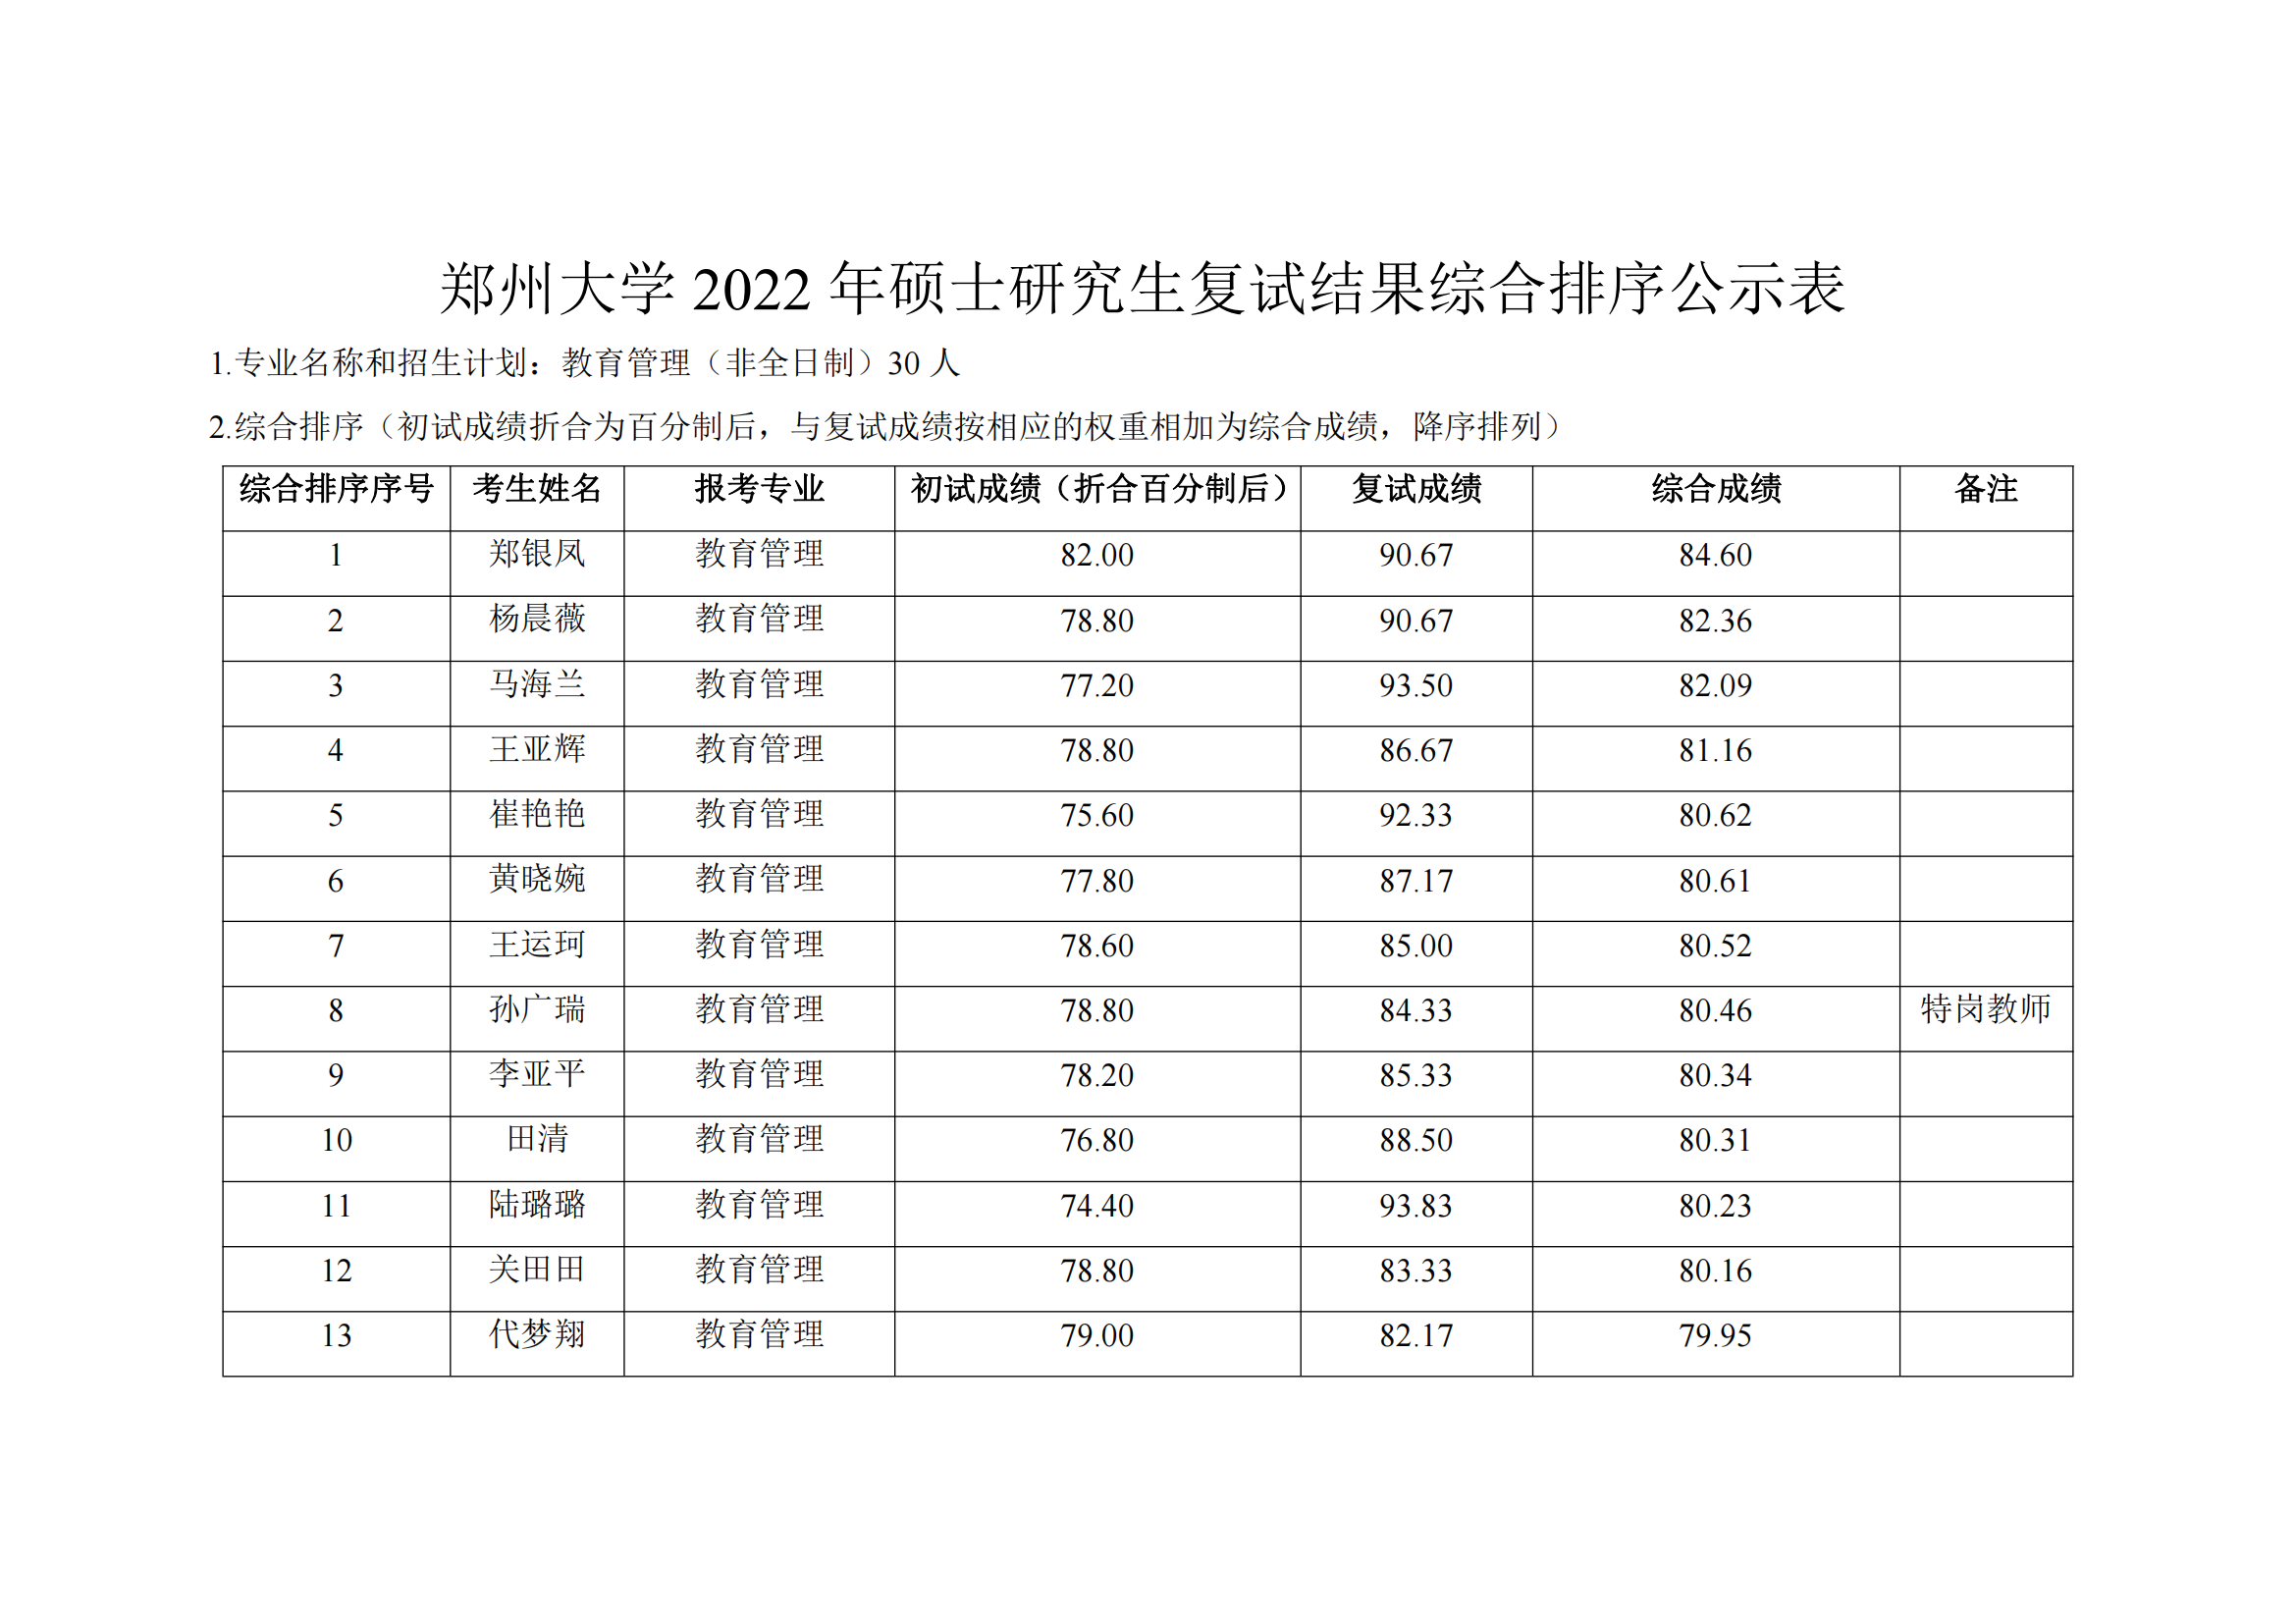 郑州大学教育学院2022年硕士研究生复试结果综合排序公示表_13.png